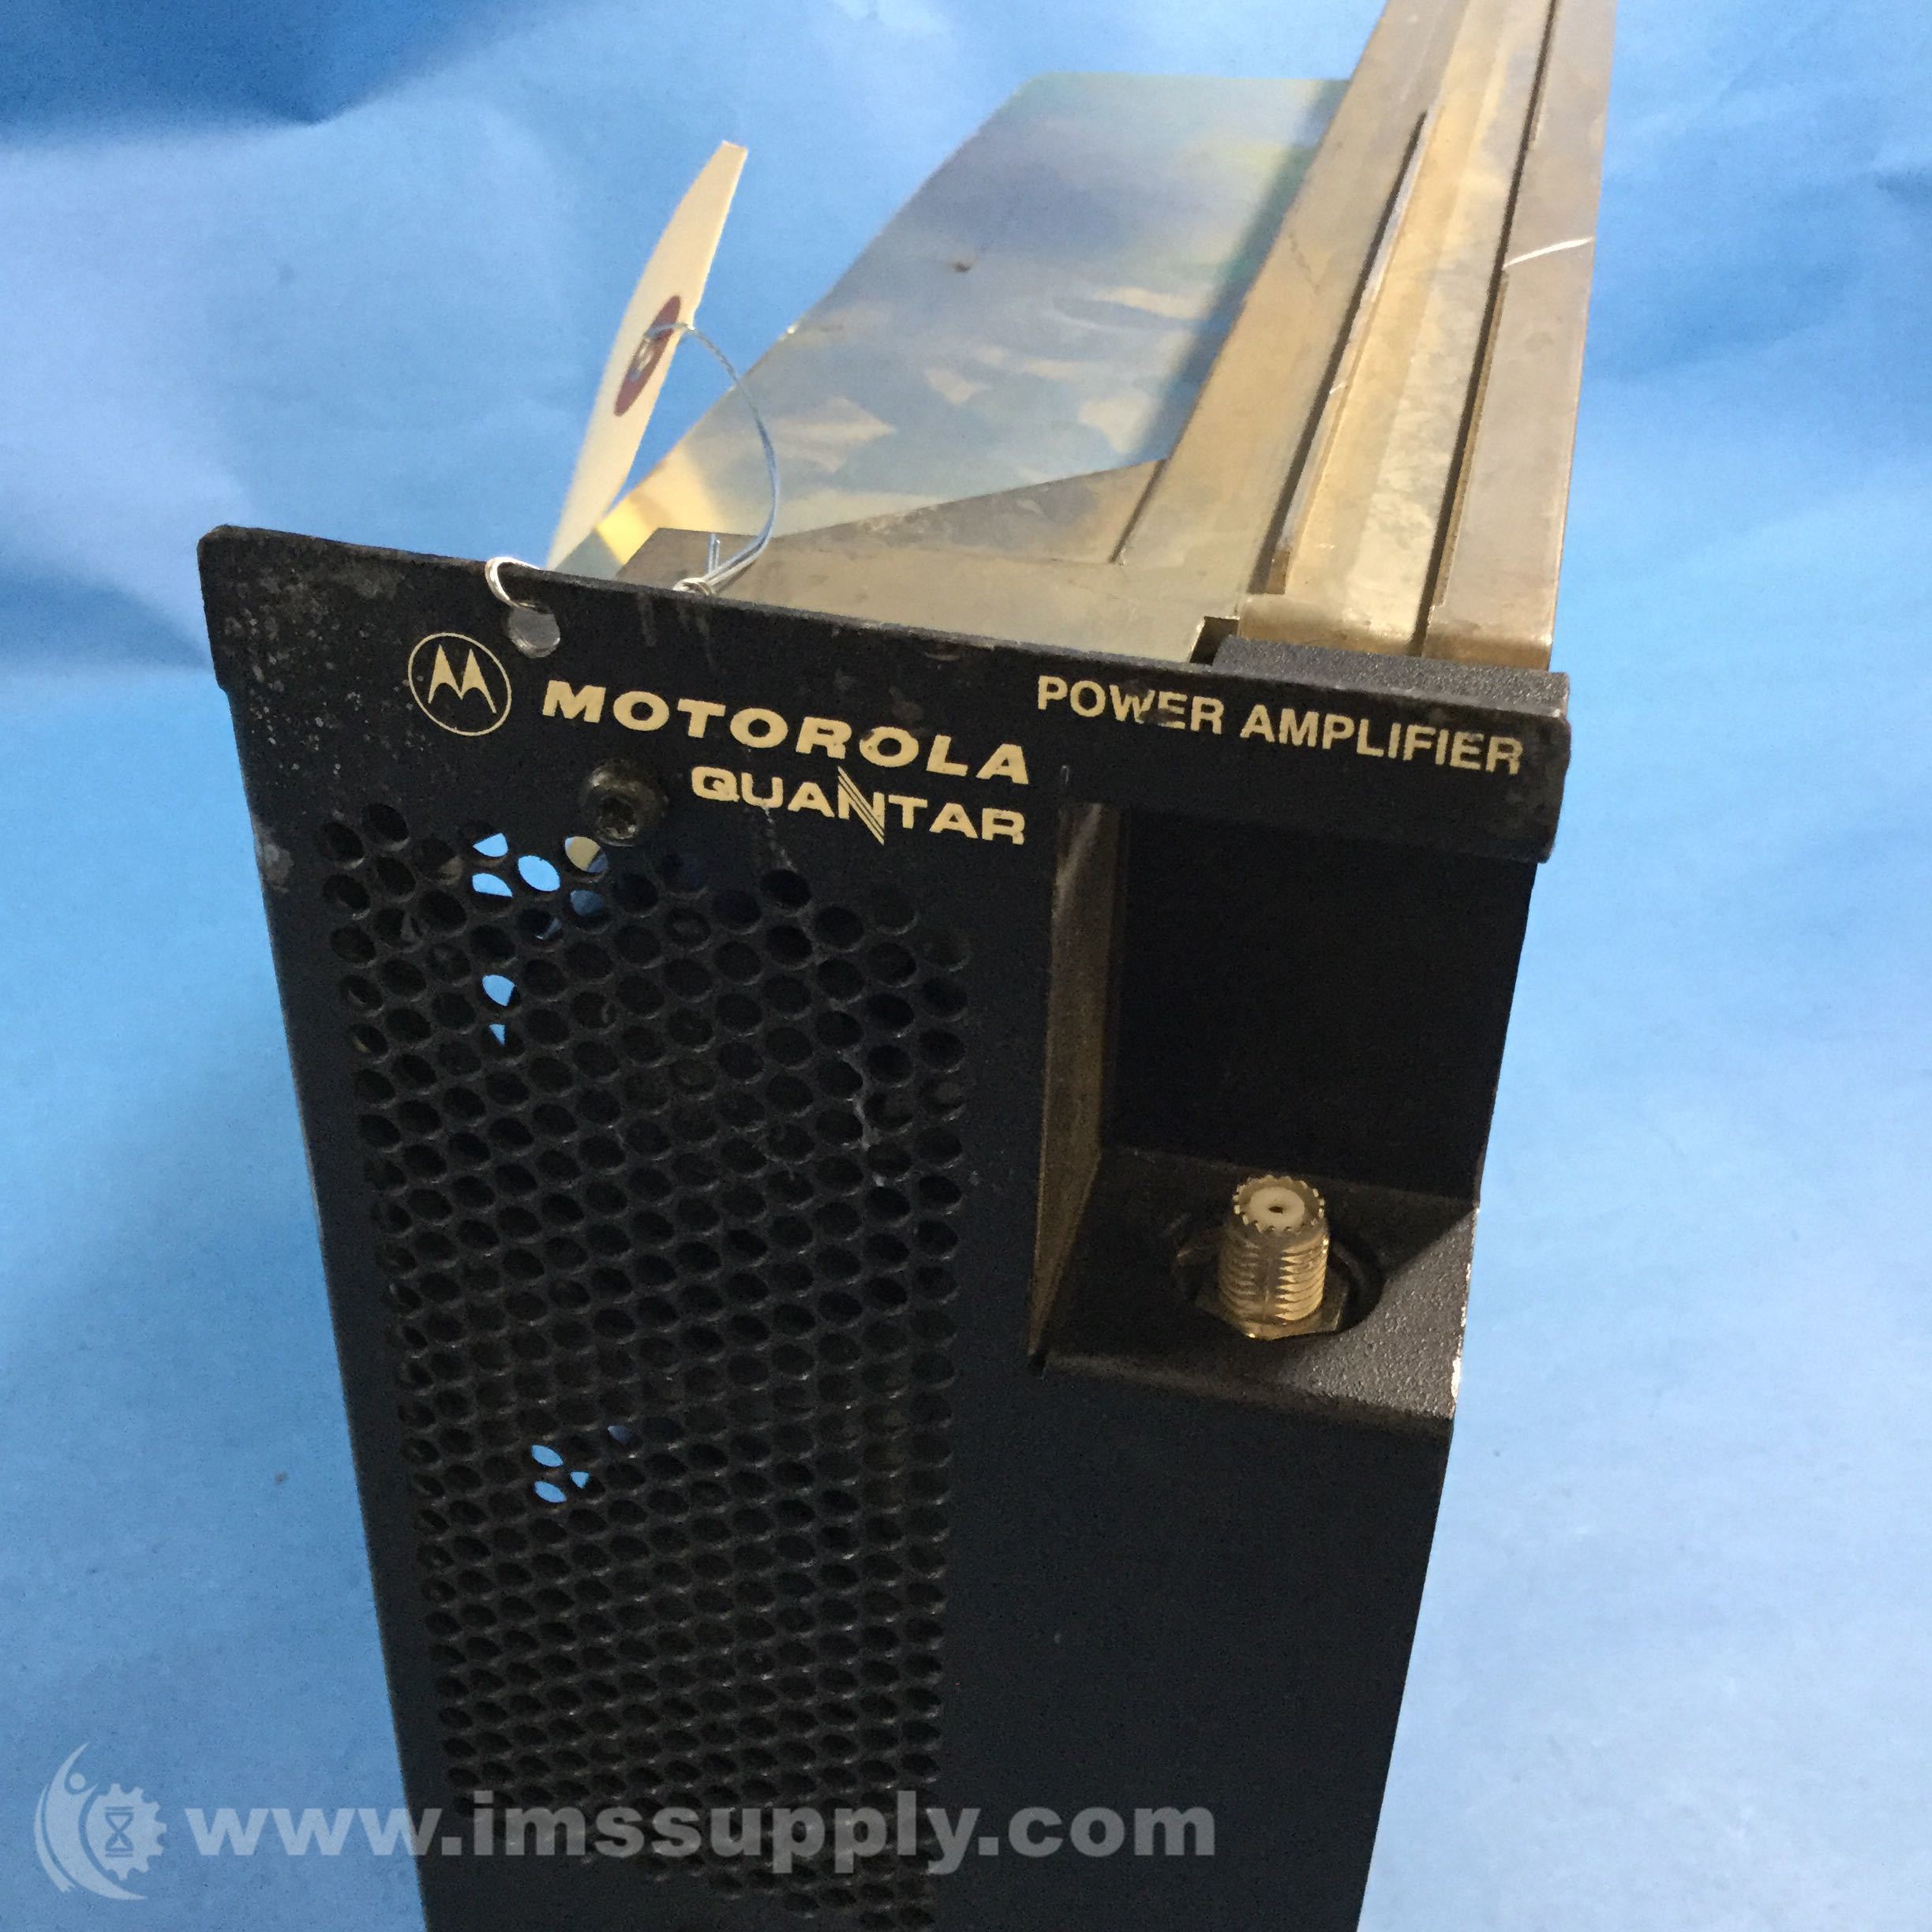 Motorola TLF1800B Quantar Power Amplifier 